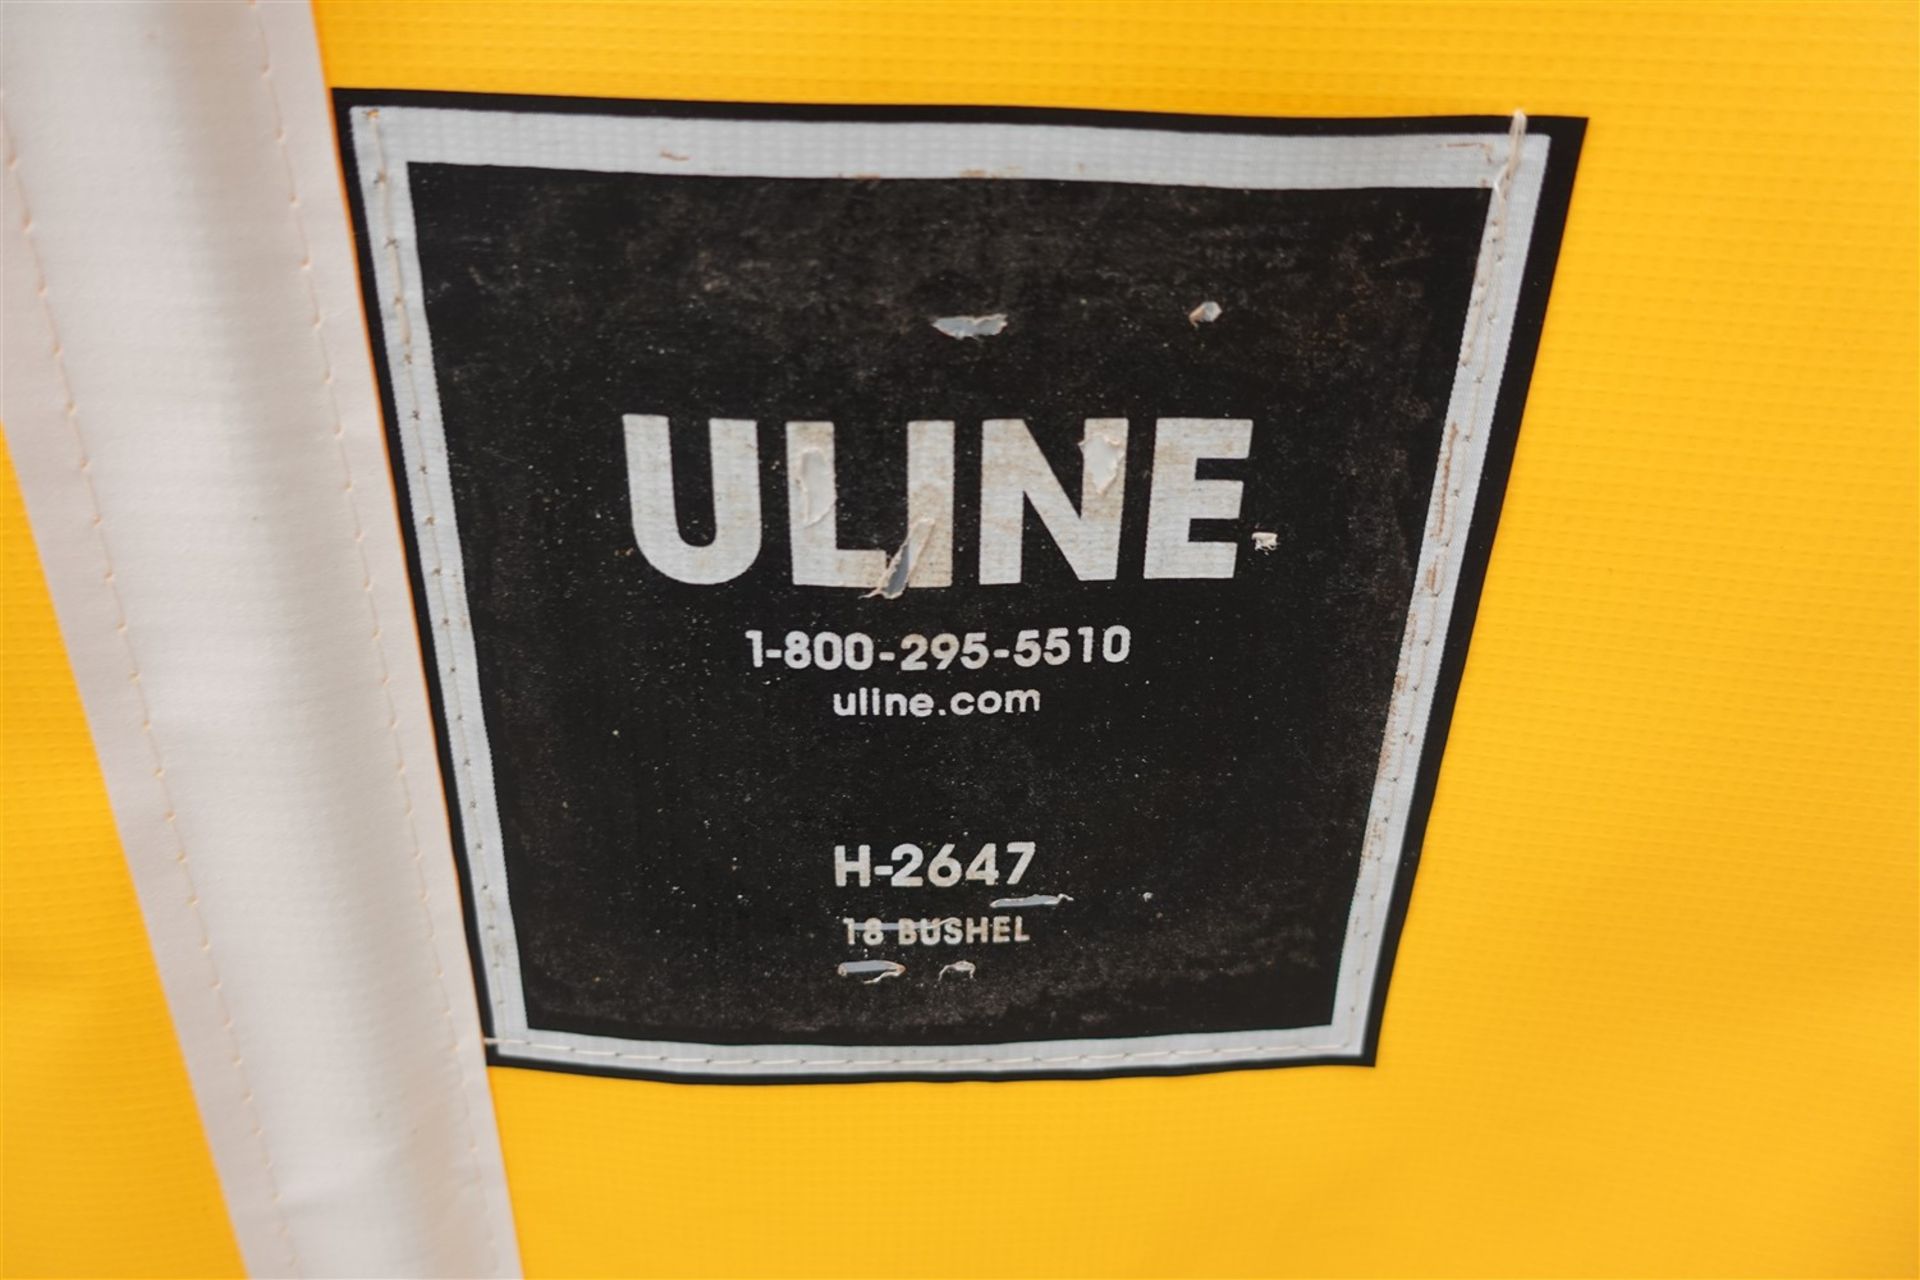 ULINE YELLOW VINYL BASKET TRUCK - 18 BUSHEL, 42 IN. X 30 IN. MOD. H-2647 - Image 2 of 2